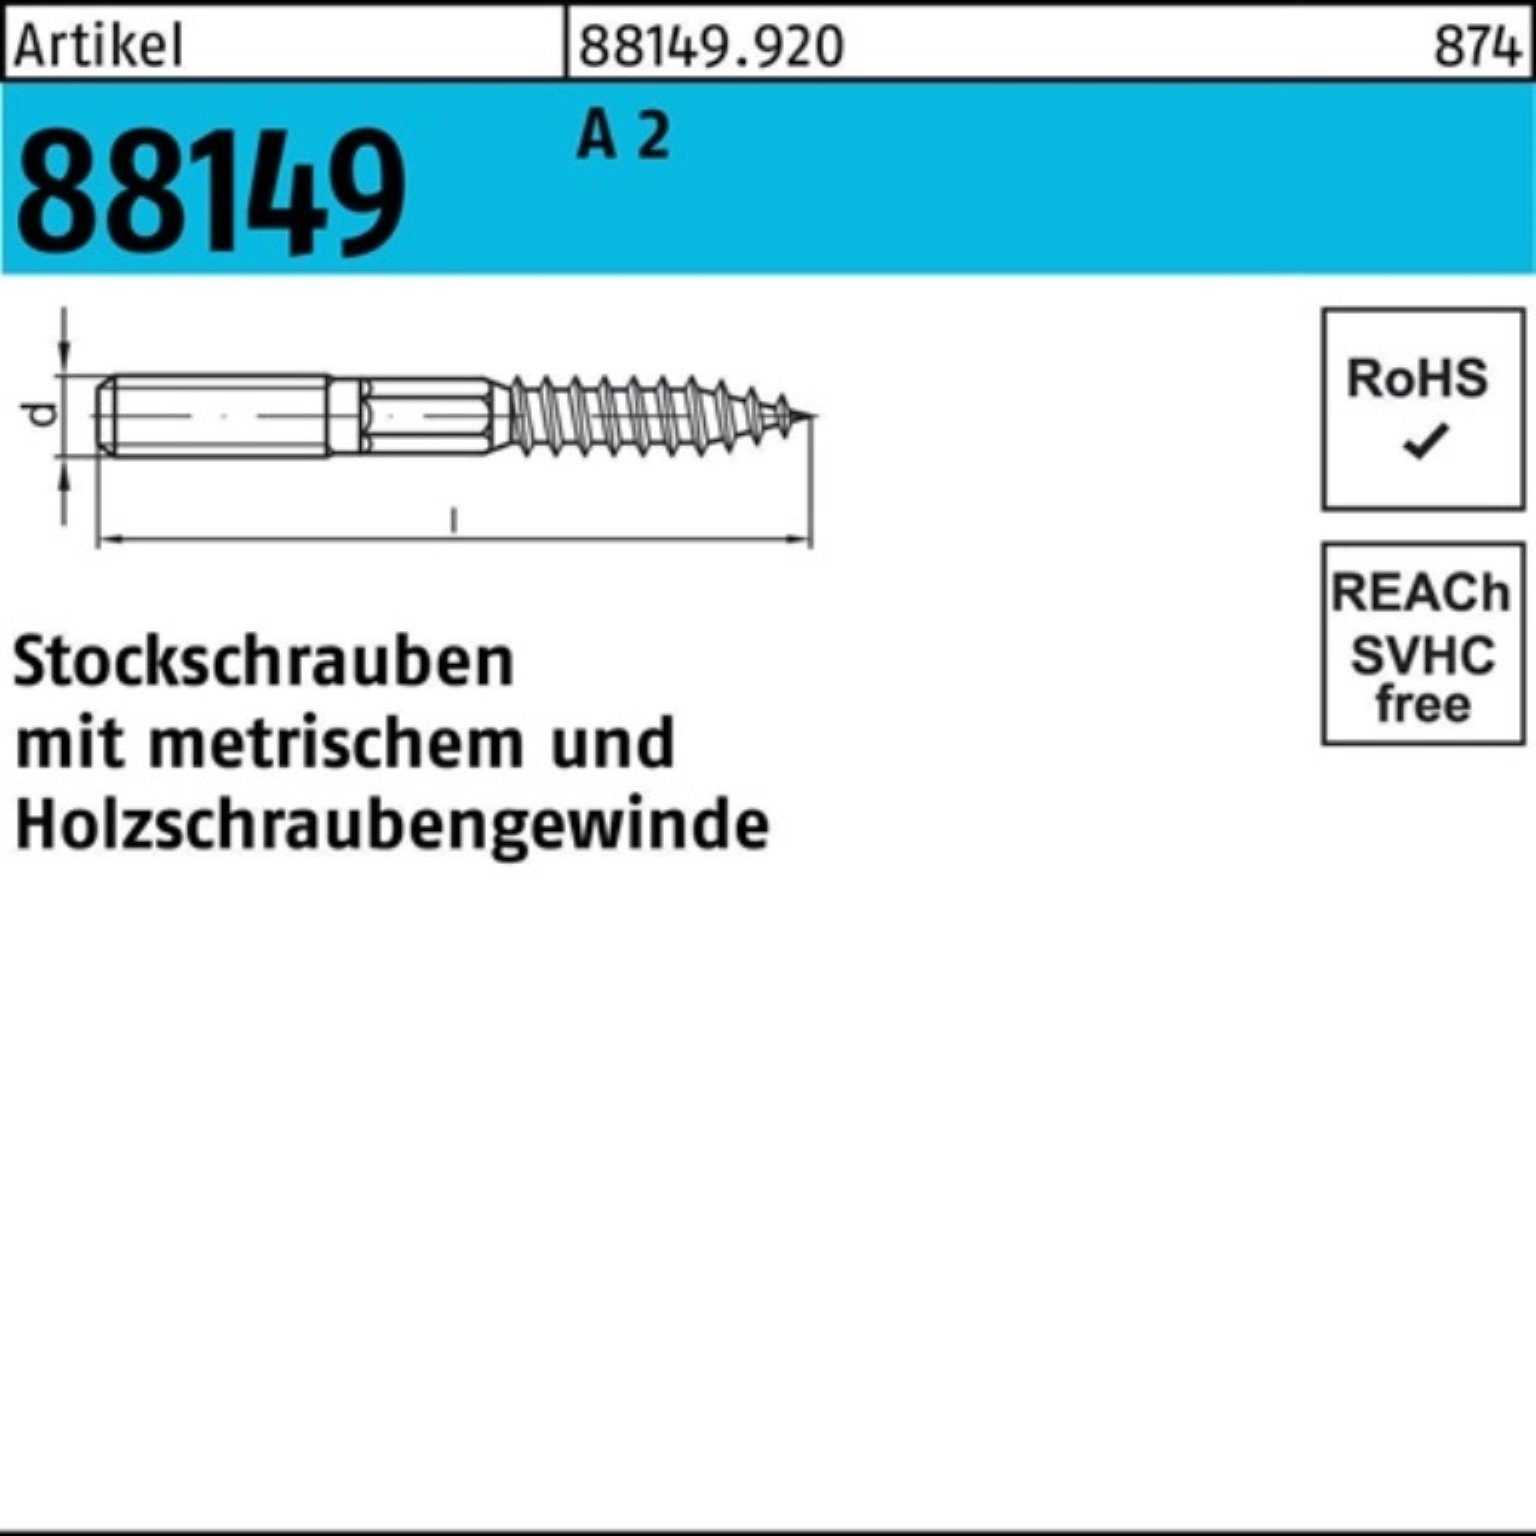 Stockschraube Stockschraube 100er Pack R Artike 88149 E A 2 23 Typ Reyher M8x 140 Stück 50